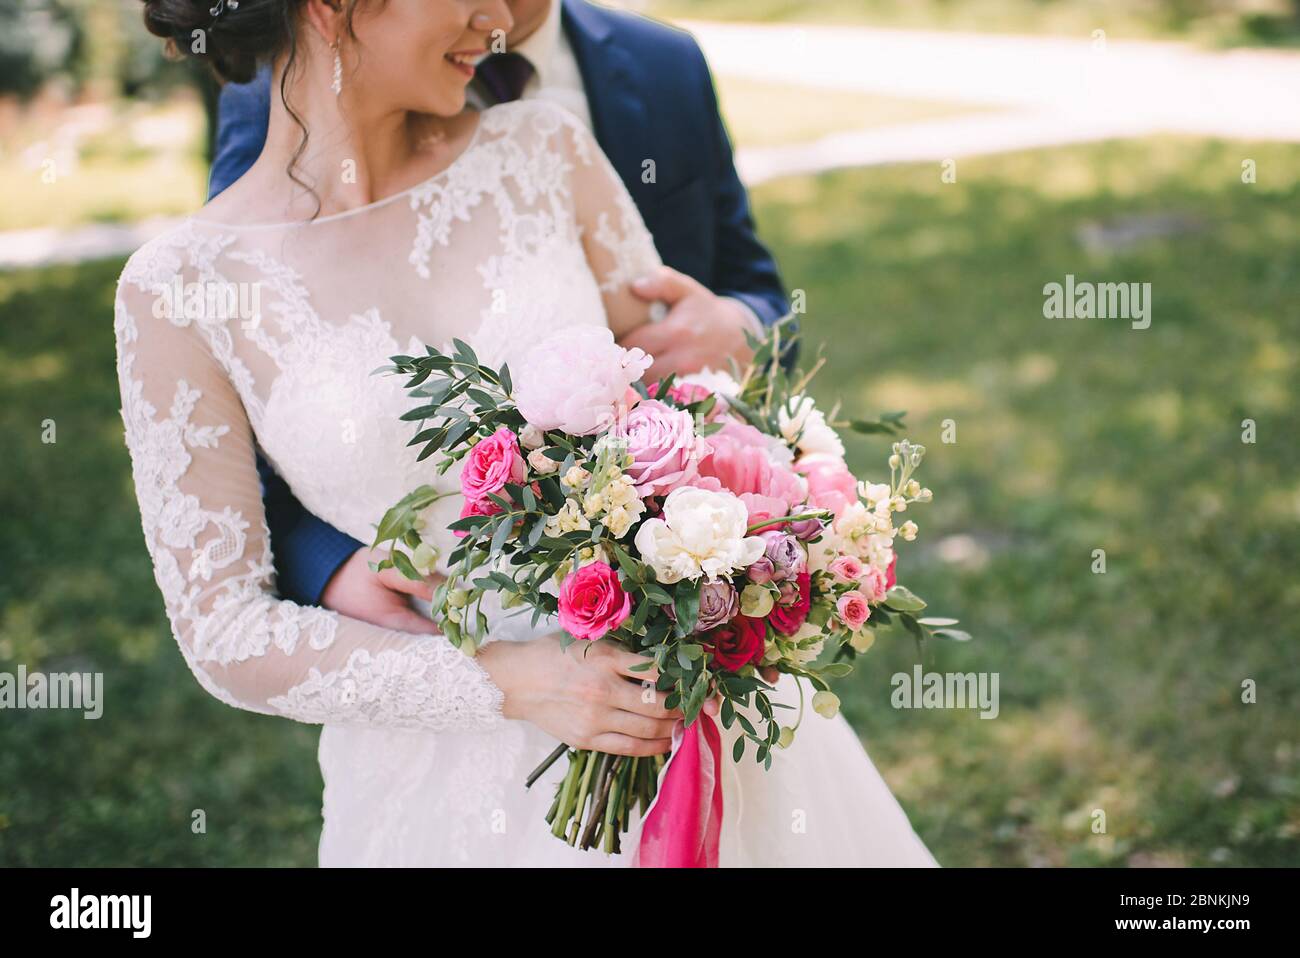 Nahaufnahme des Bouquets einer Braut aus Pfingstrosen, Rosen, Eukalyptus in weiß-rosa Schattierungen, die mit rosa Bändern gebunden sind. Die Braut hält einen Strauß in der Hand in einem Wh Stockfoto